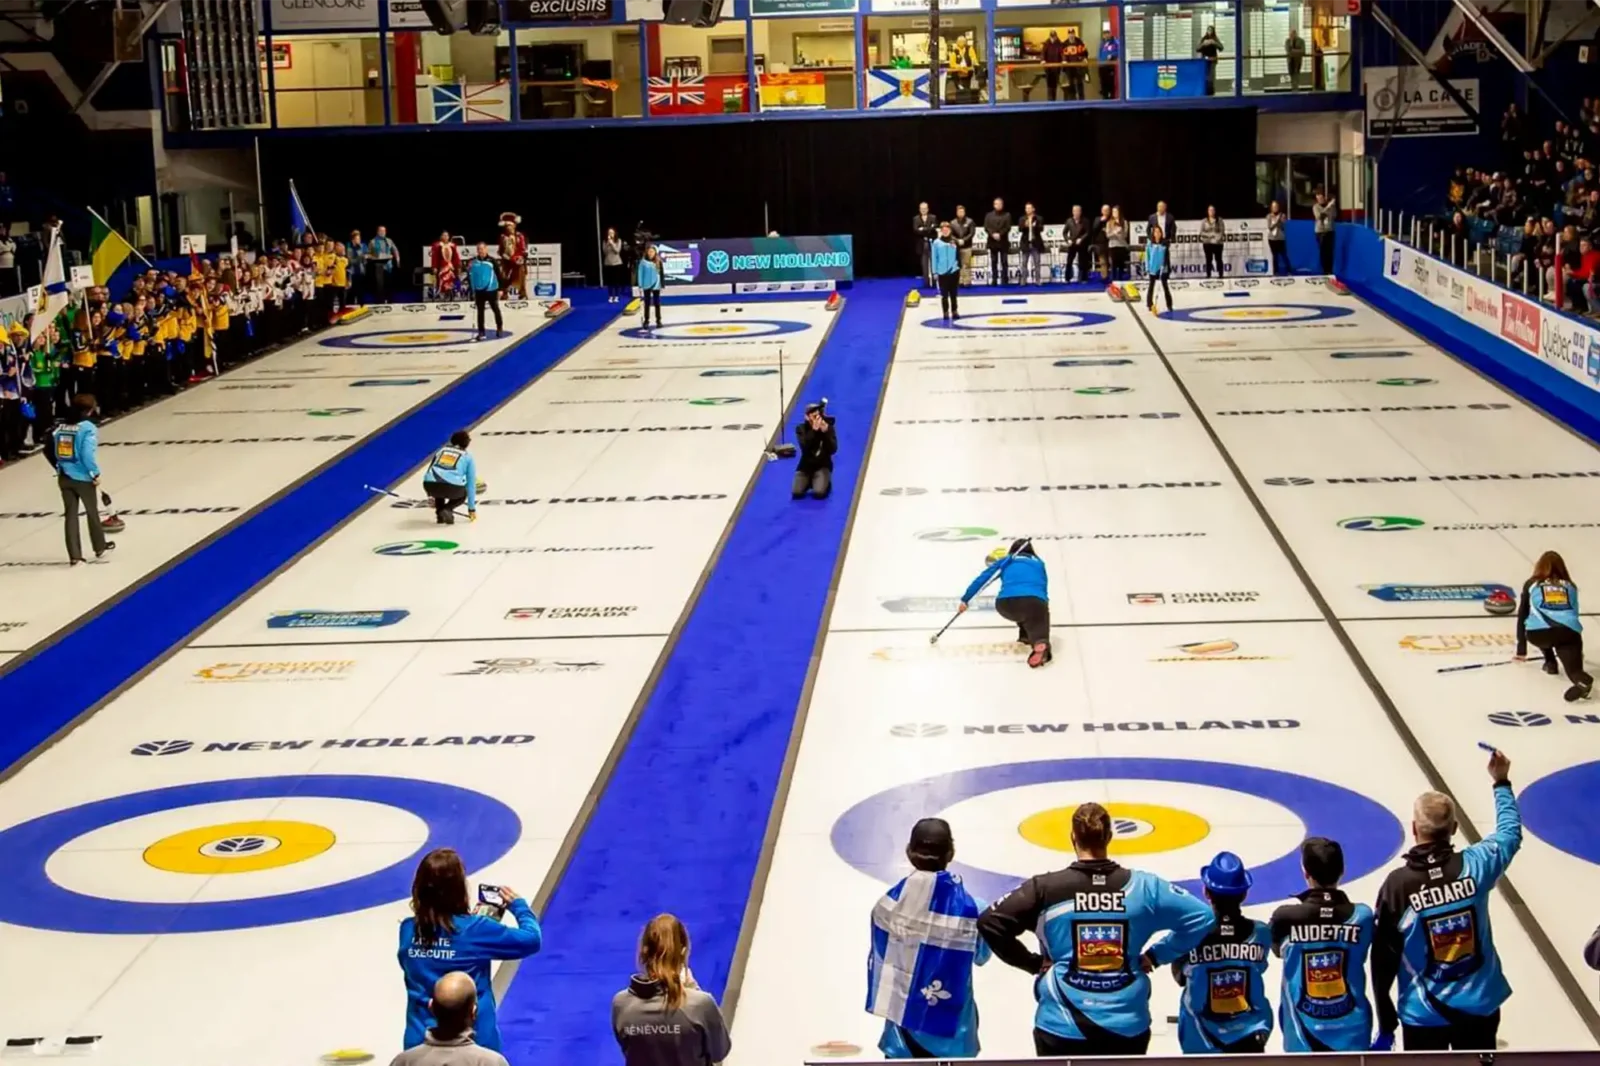 Quatre matchs de curling en cours durant le championnat canadien de curling 2023 à Rouyn-Noranda